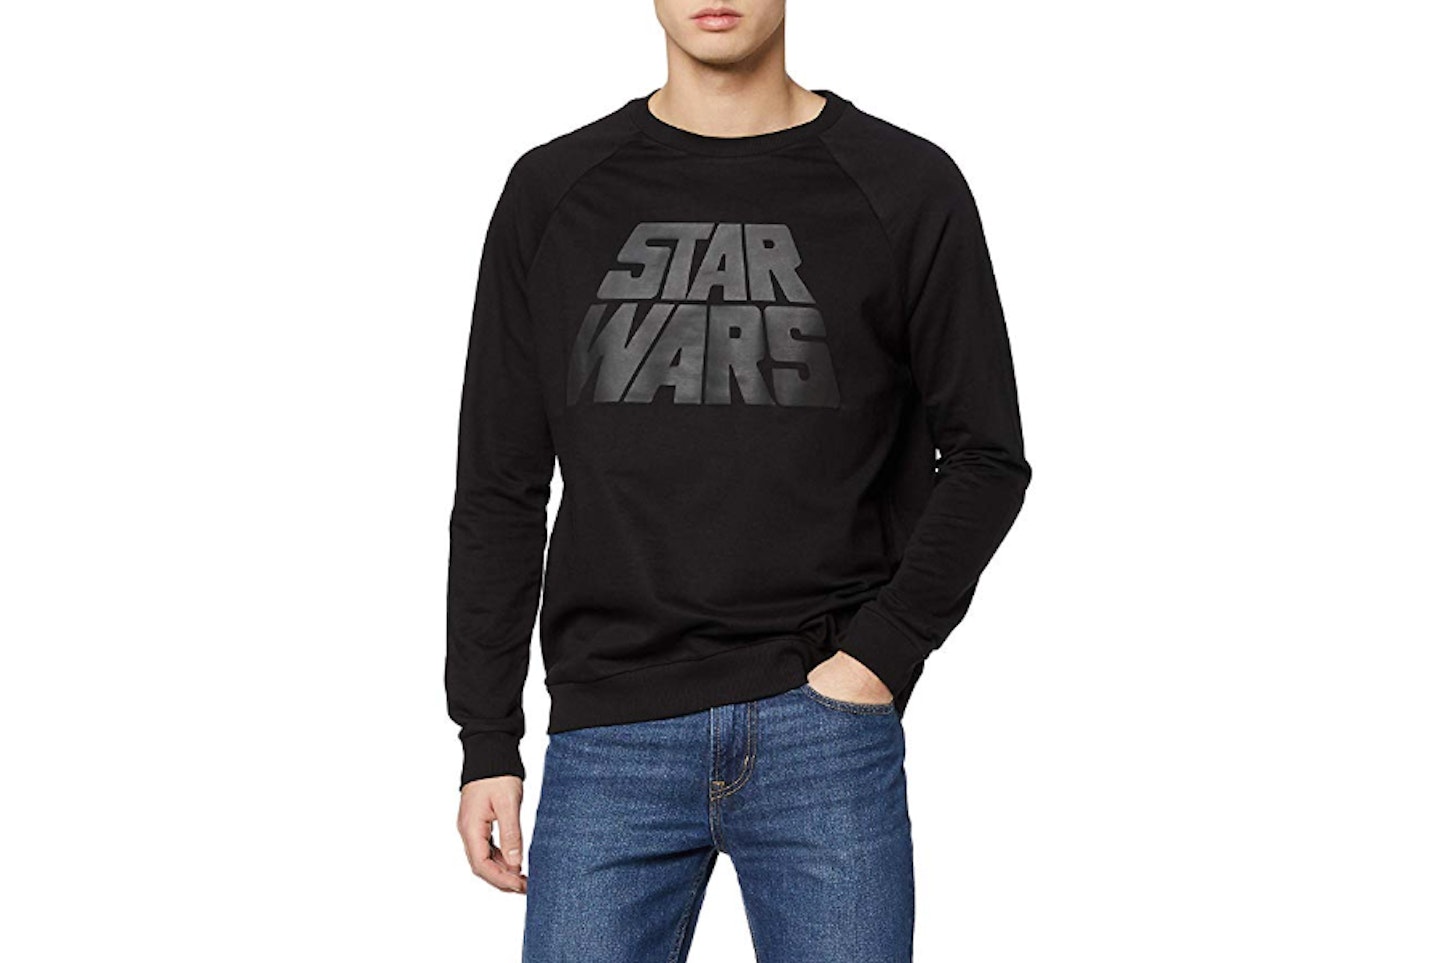 Star Wars Sweatshirt by find